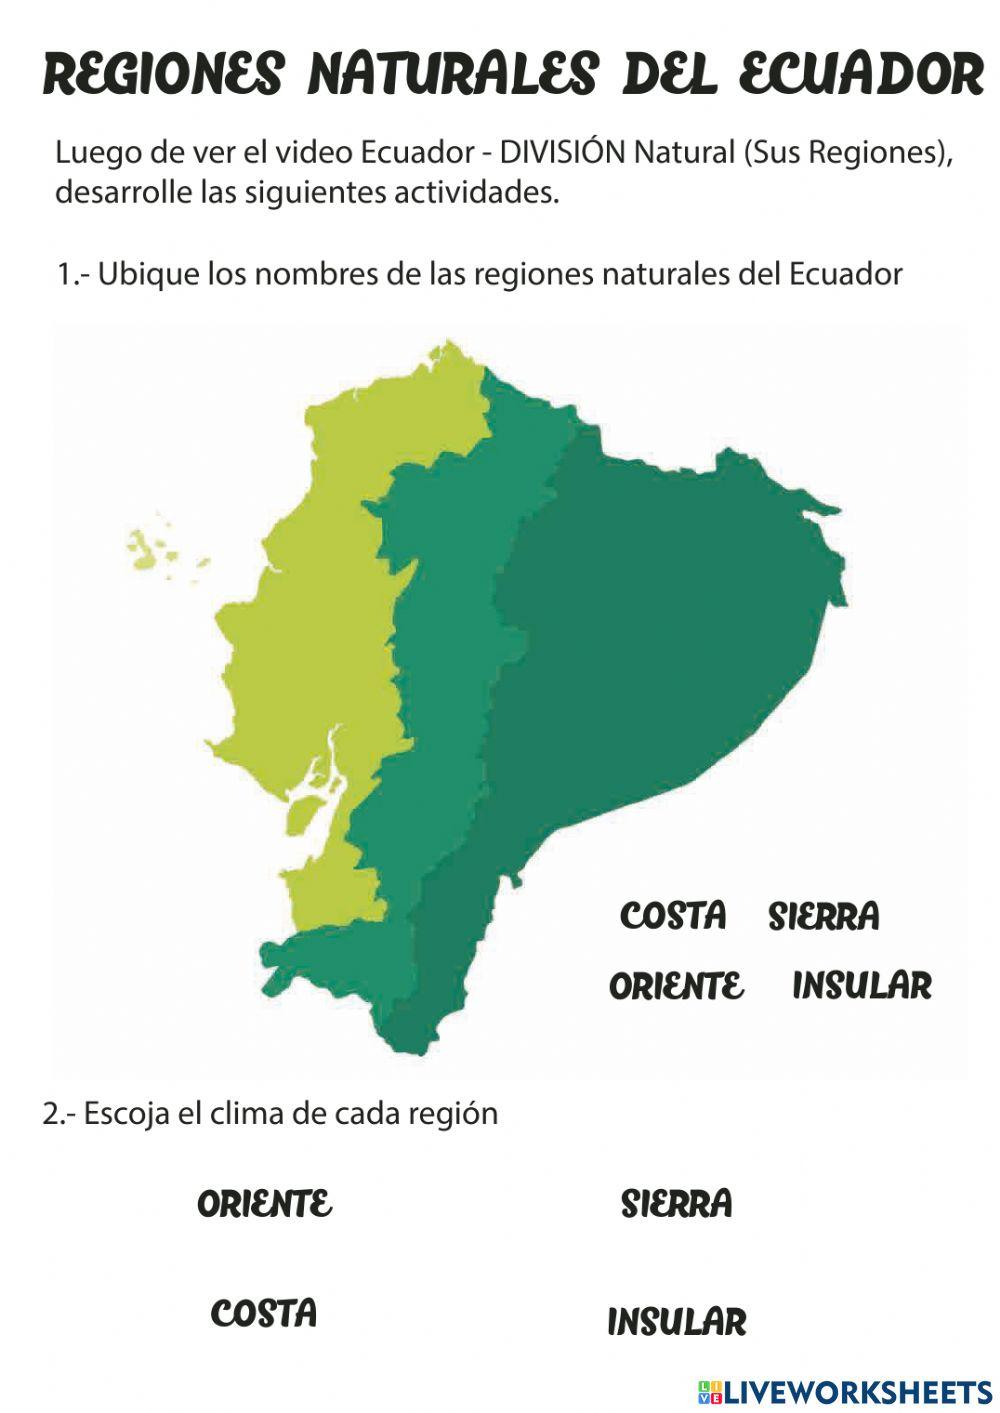 Regiones del Ecuadro